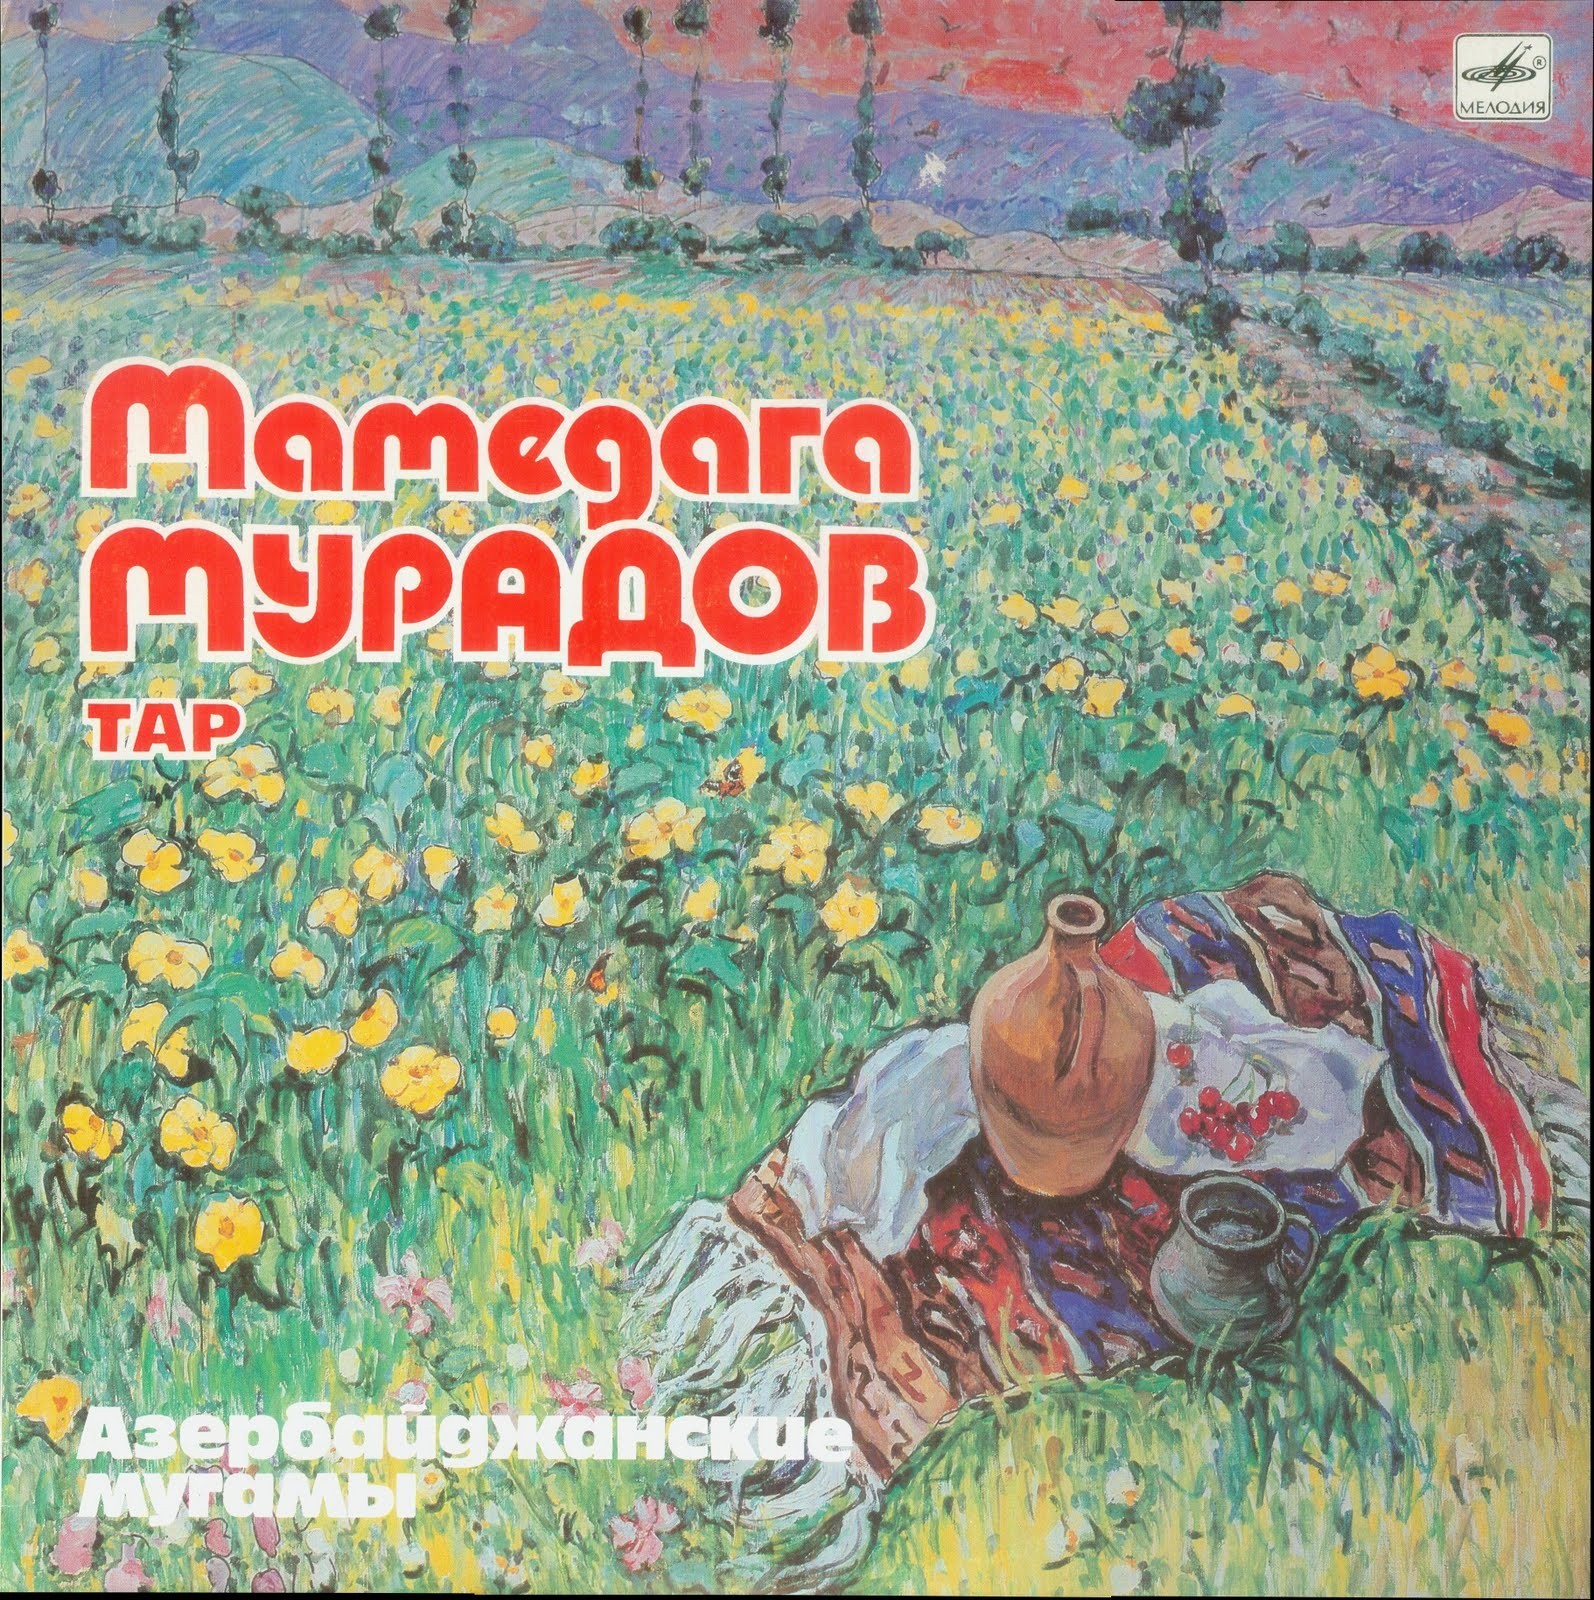 Мамедага МУРАДОВ (Мəммəдаға Мурадов, тар) "Азербайджанские мугамы"